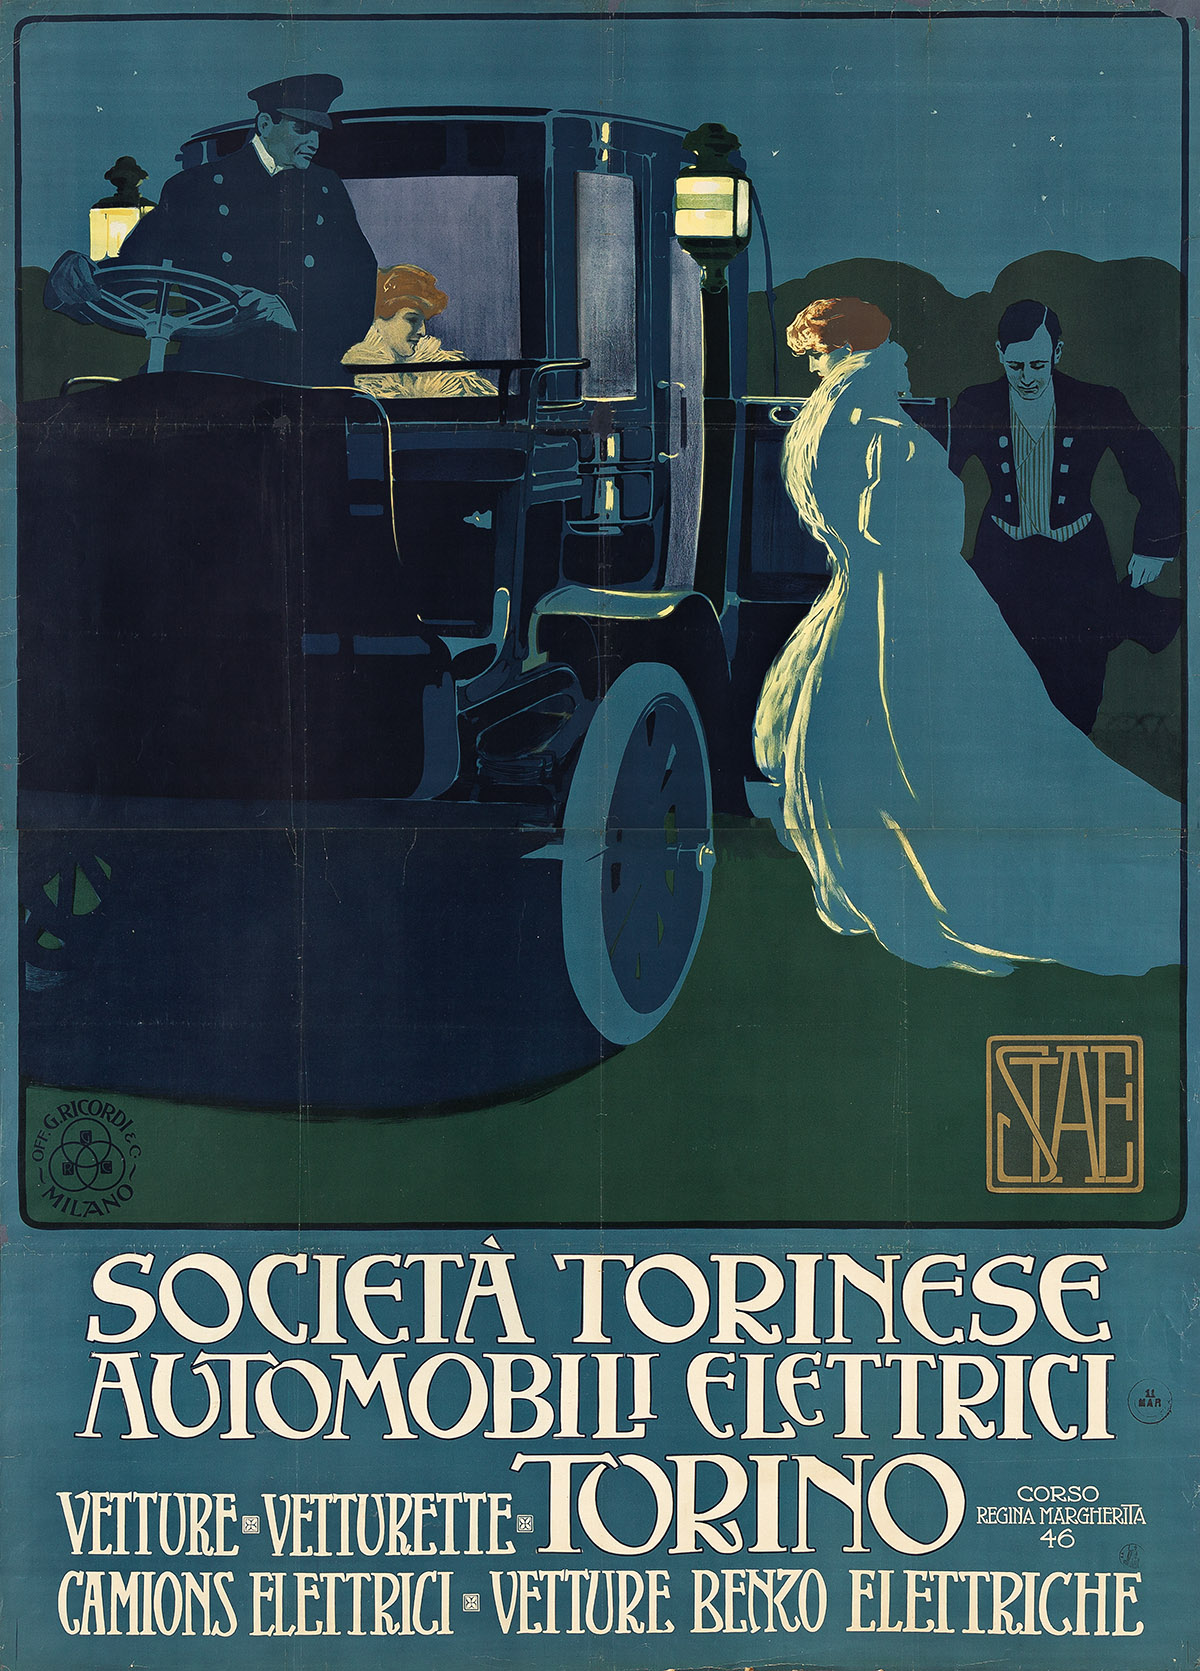 Marcello Dudovich, Società Torinese Automobili Elettrici / Torino, circa 1910. Estimate $15,000 to $20,000.